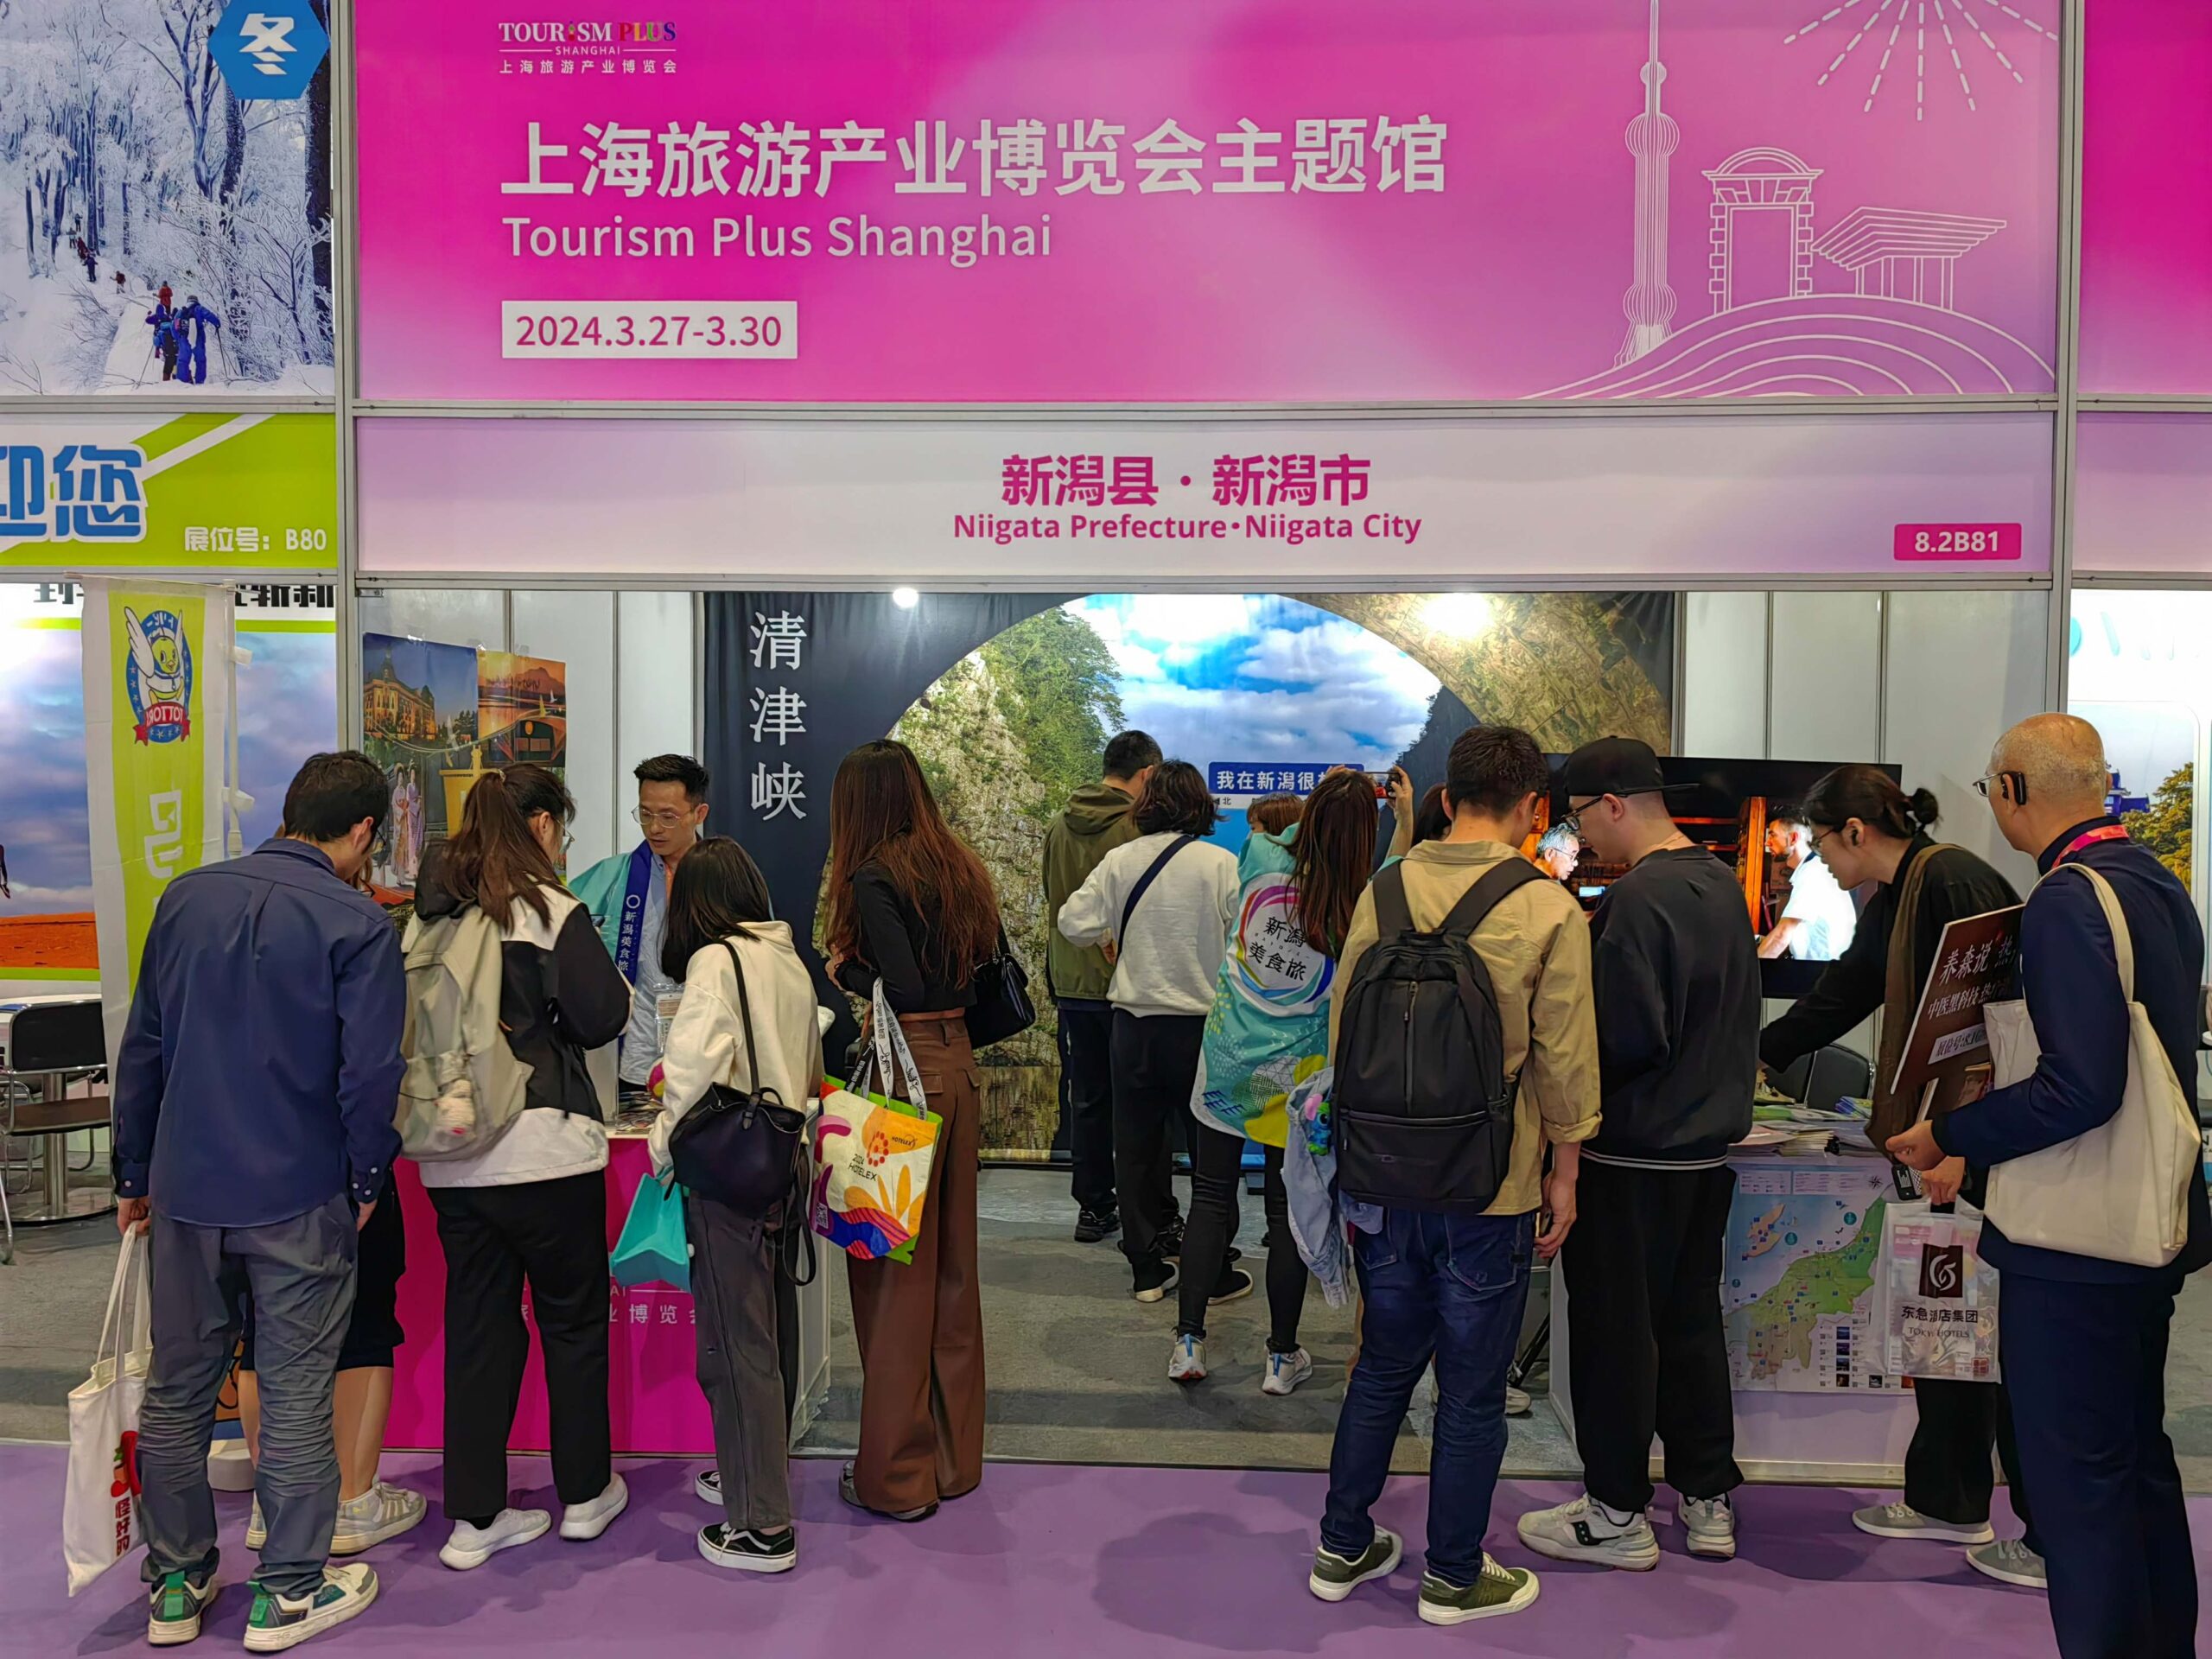 上海旅游産業博覧会に出展しました。